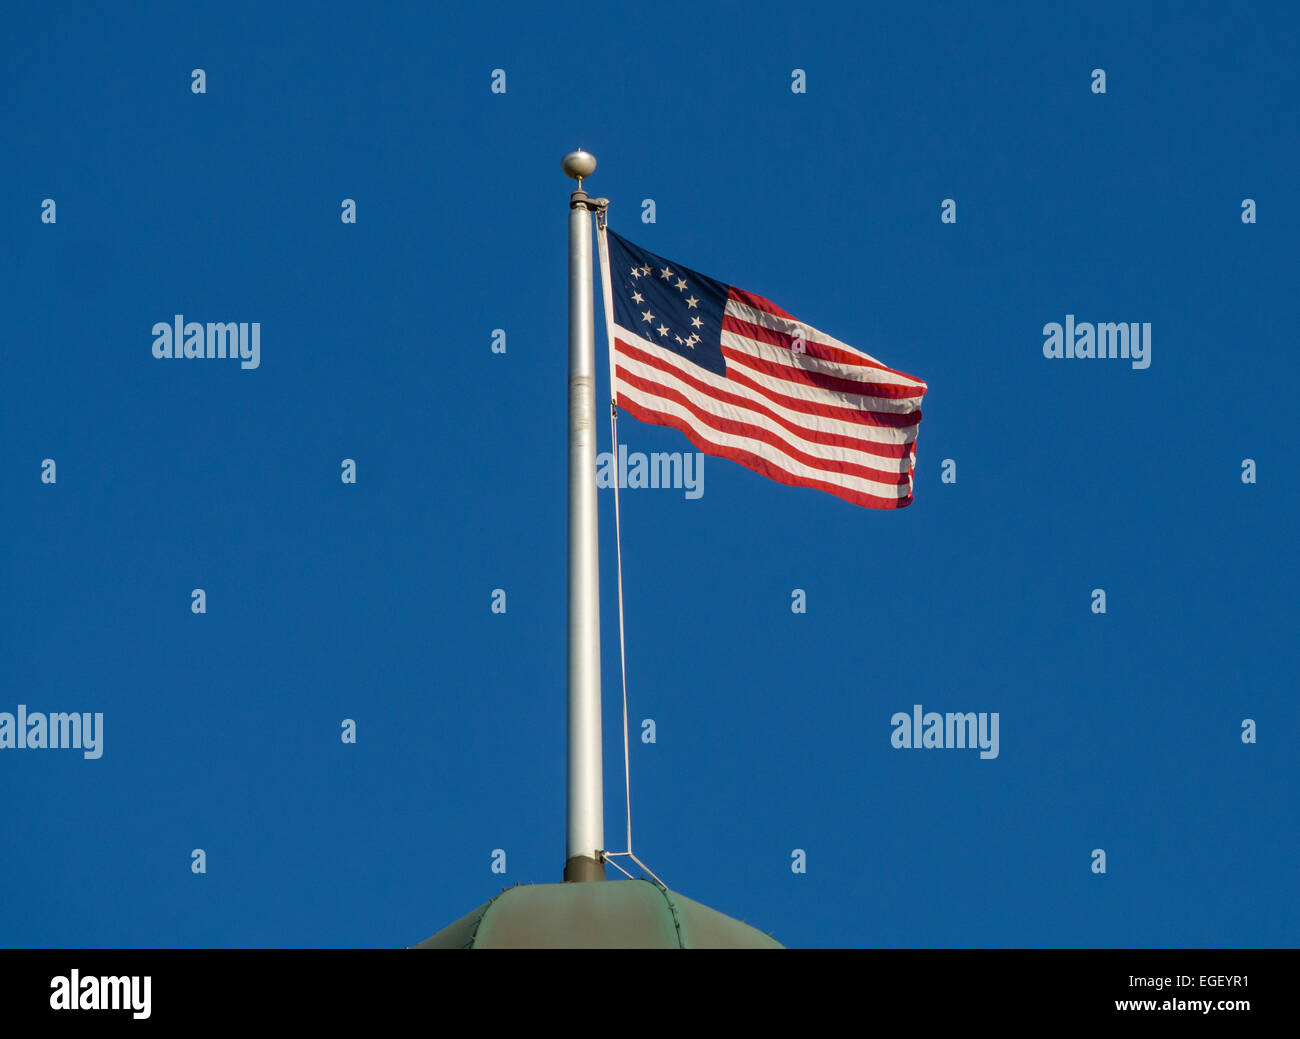 FLORIDA, USA - 19. MAI 2014: Frühe US-Flagge (13 Streifen und 1 Sterne für jeden Staat). Stockfoto